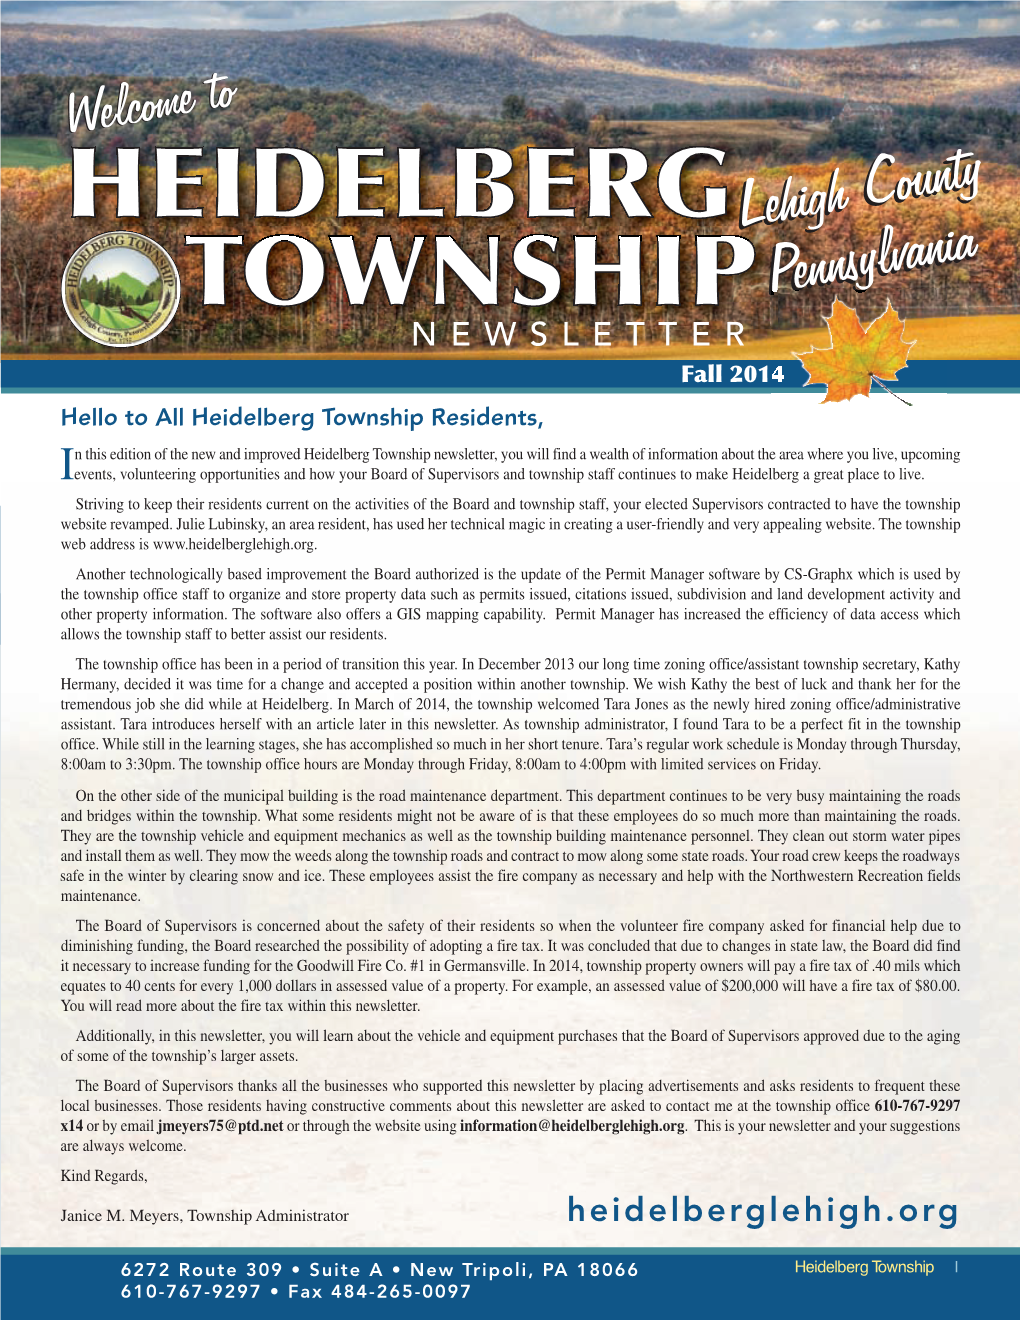 2014 Heidelberg Township Newsletter